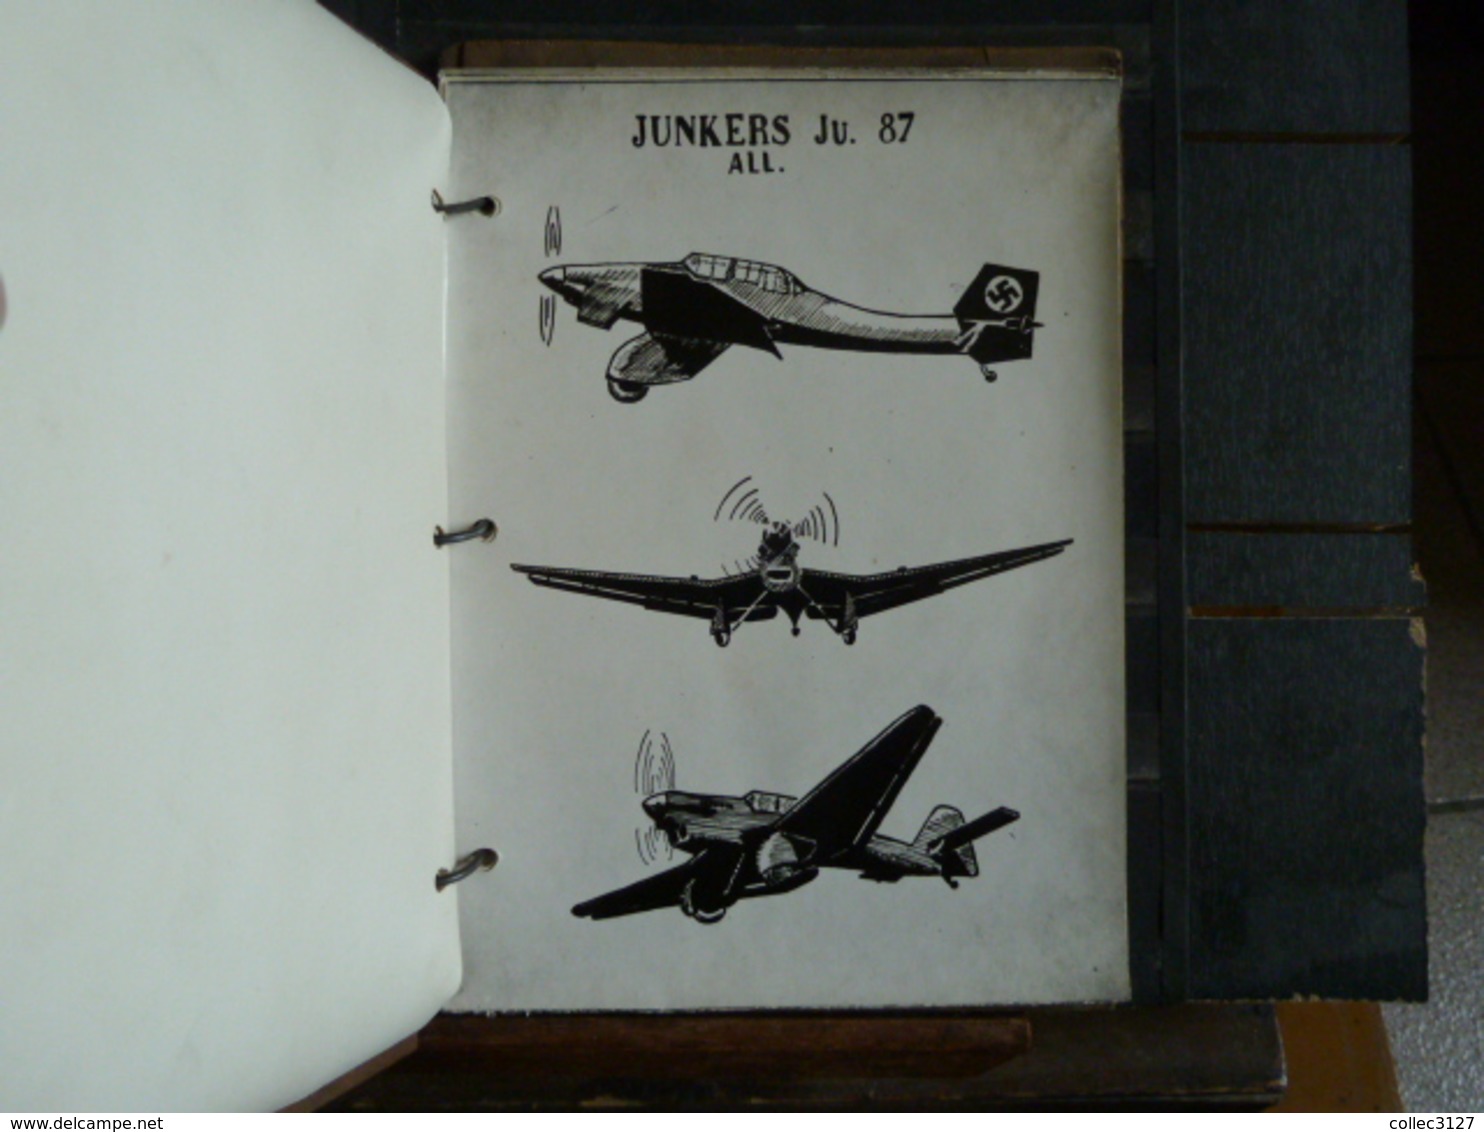 Classeur couverture contreplaquée 17*24 cm contenat 22 fiches de reconnaissance d'avions de combat de la guerre 39-45